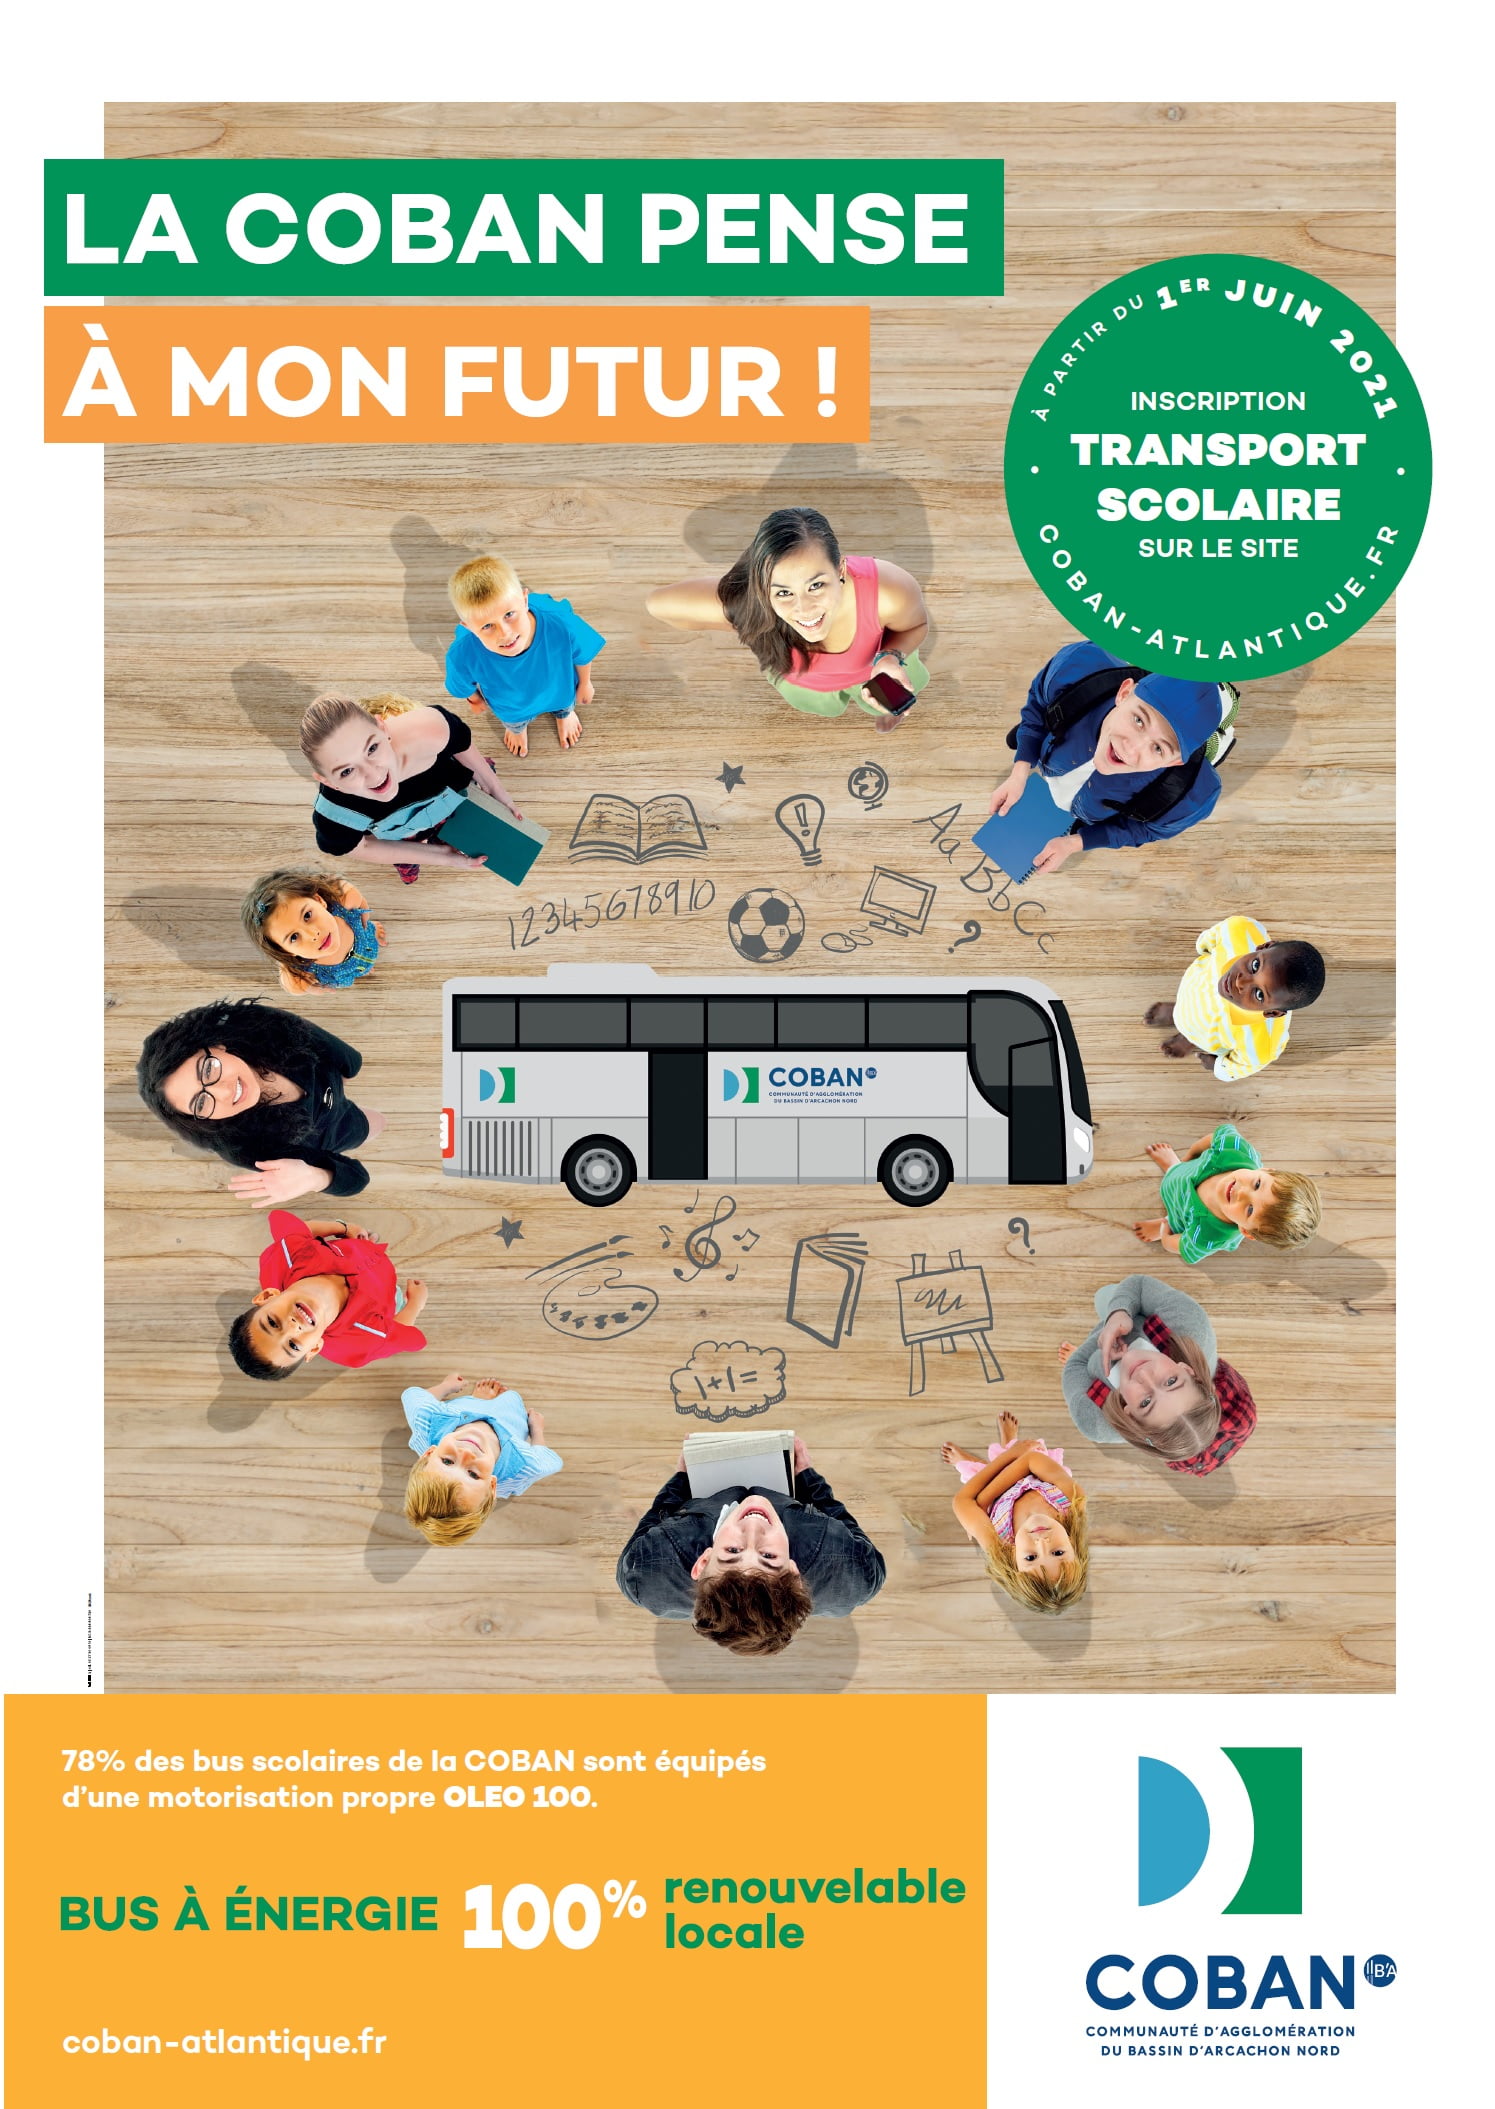 Le transport scolaire de la COBAN 2021-2022 : la COBAN pense à mon futur !